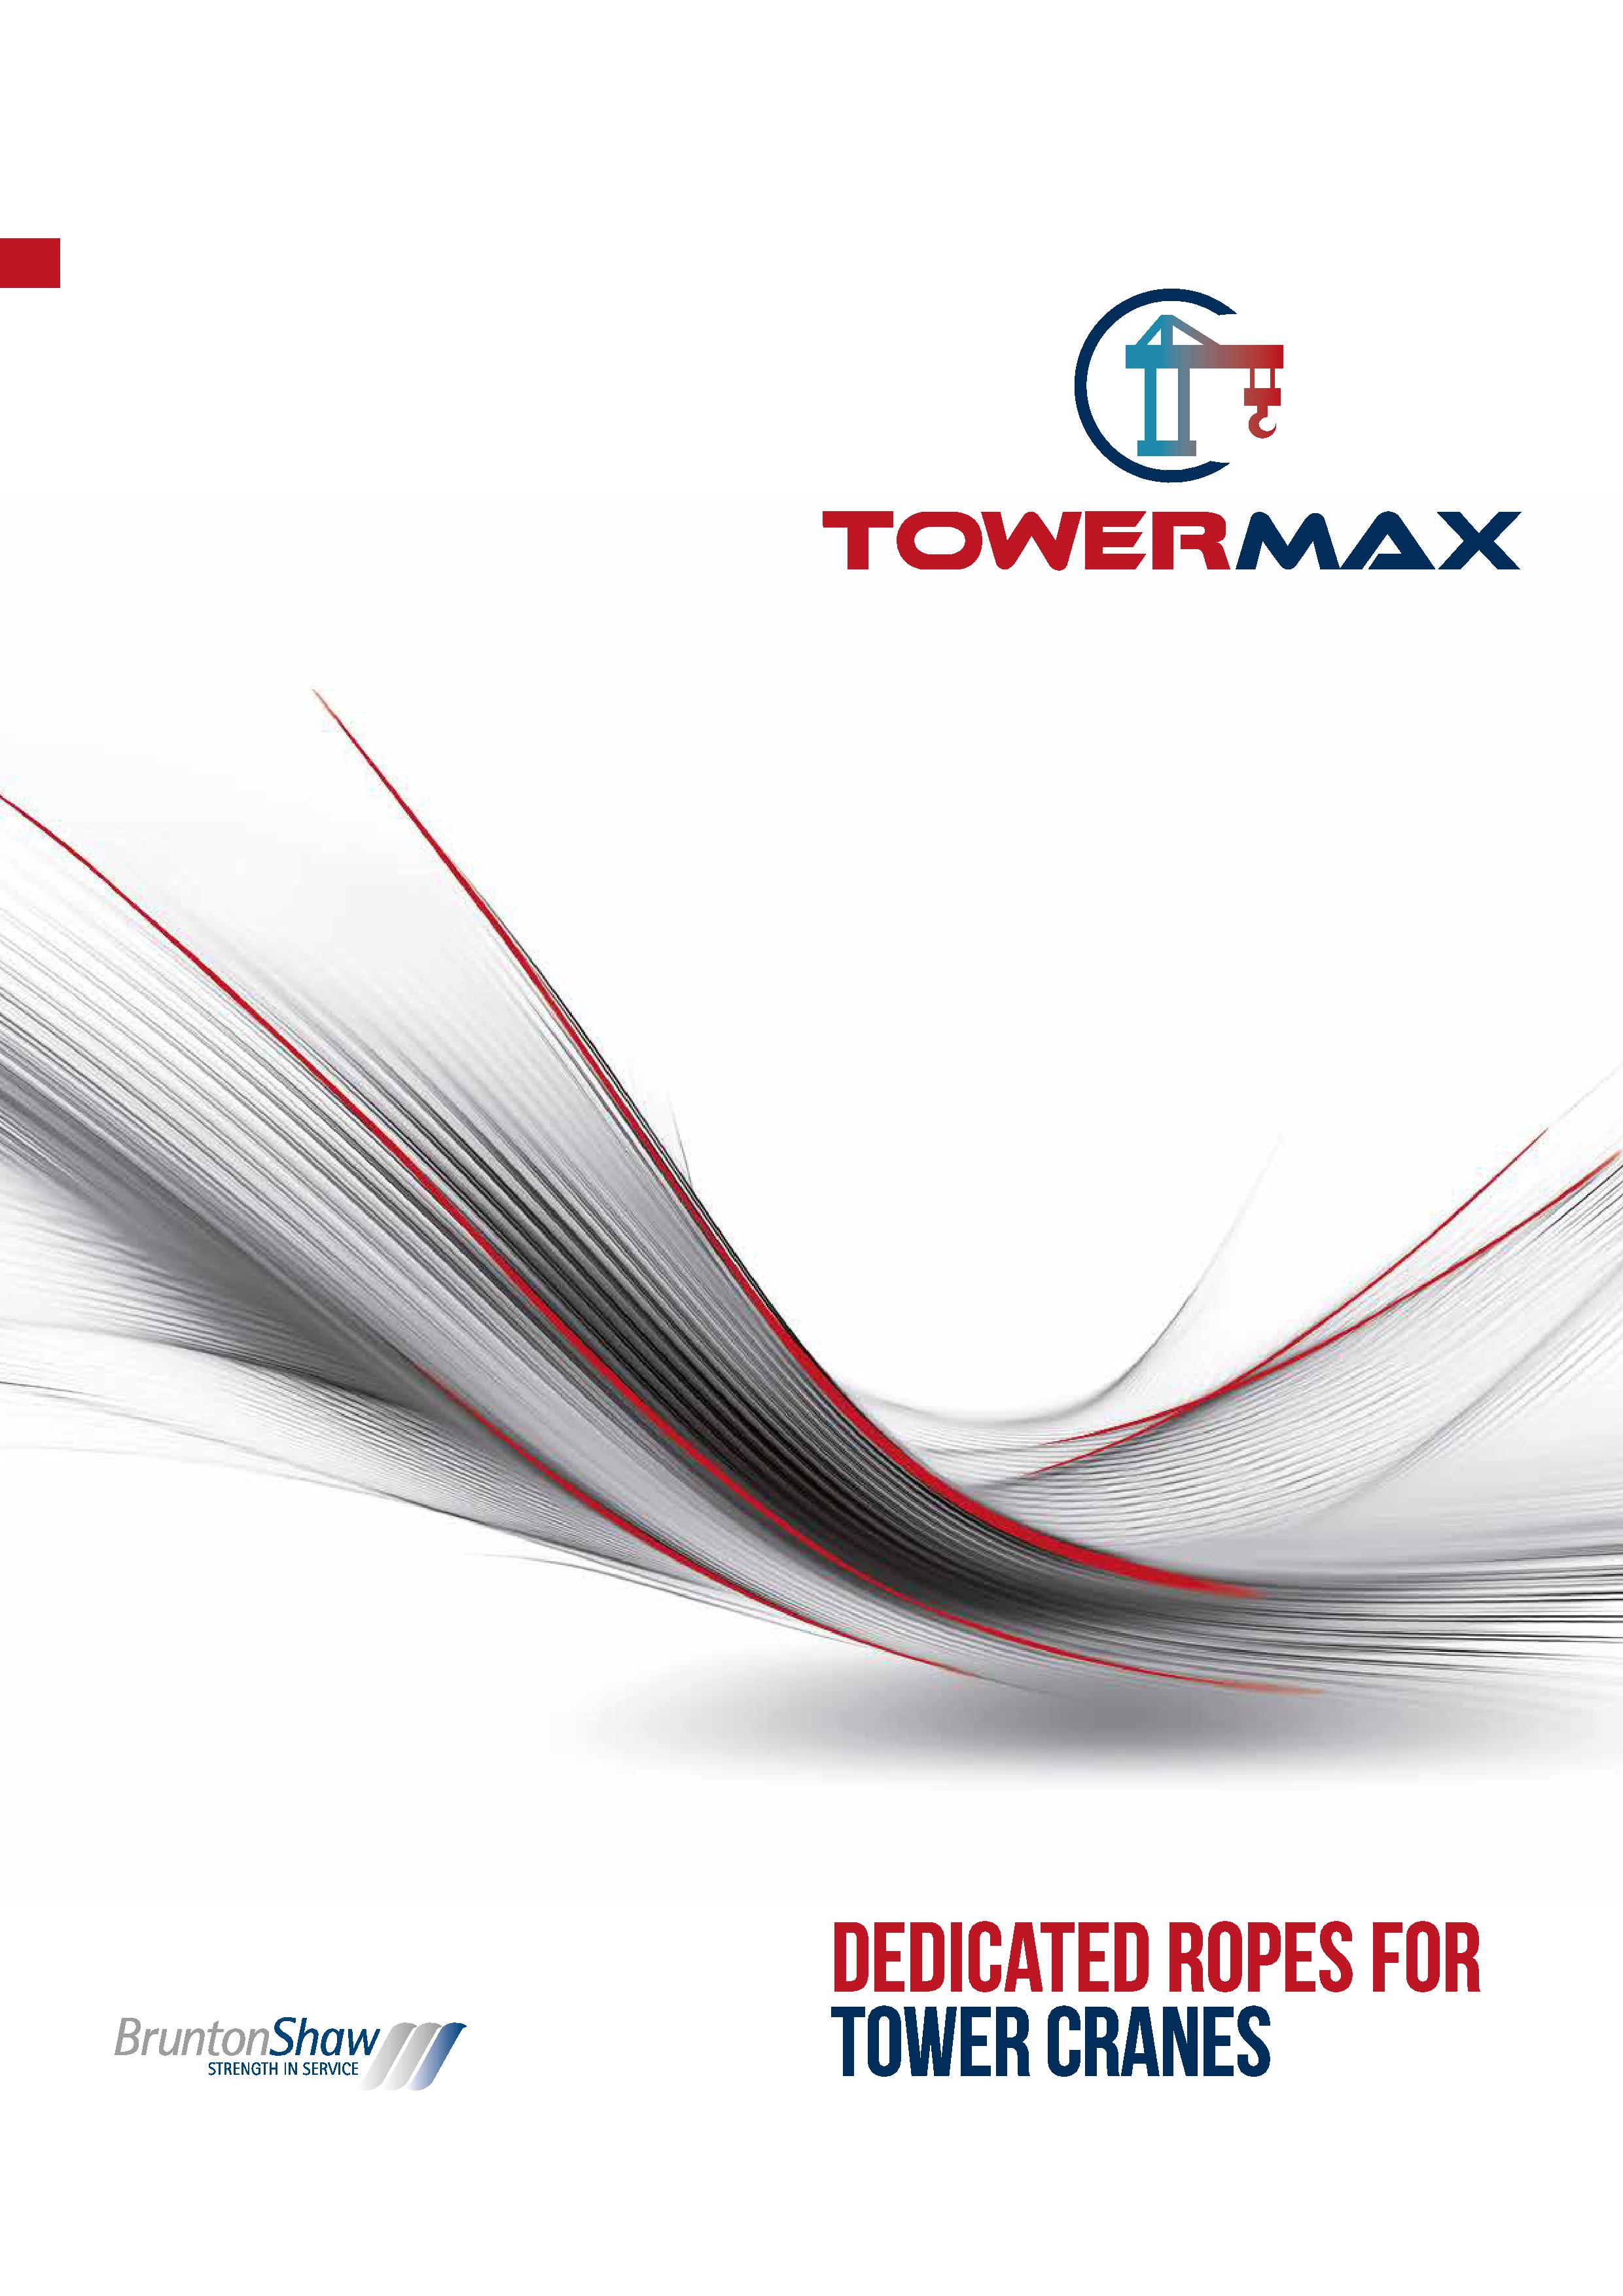 Towermax web